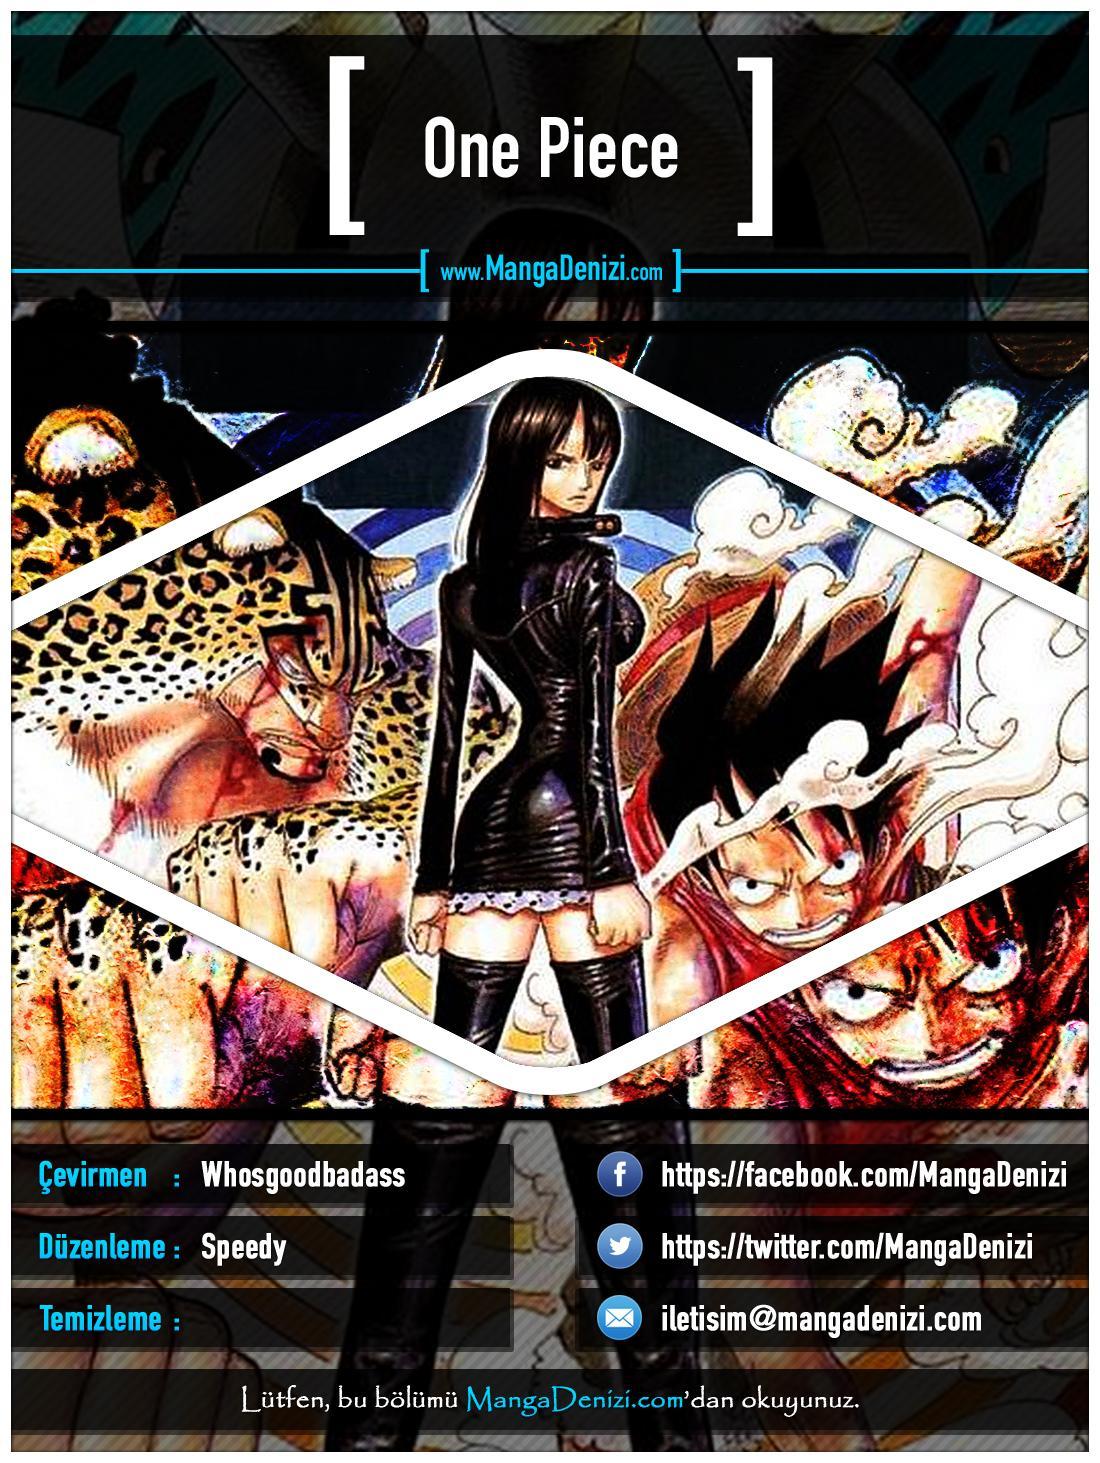 One Piece [Renkli] mangasının 0348 bölümünün 1. sayfasını okuyorsunuz.